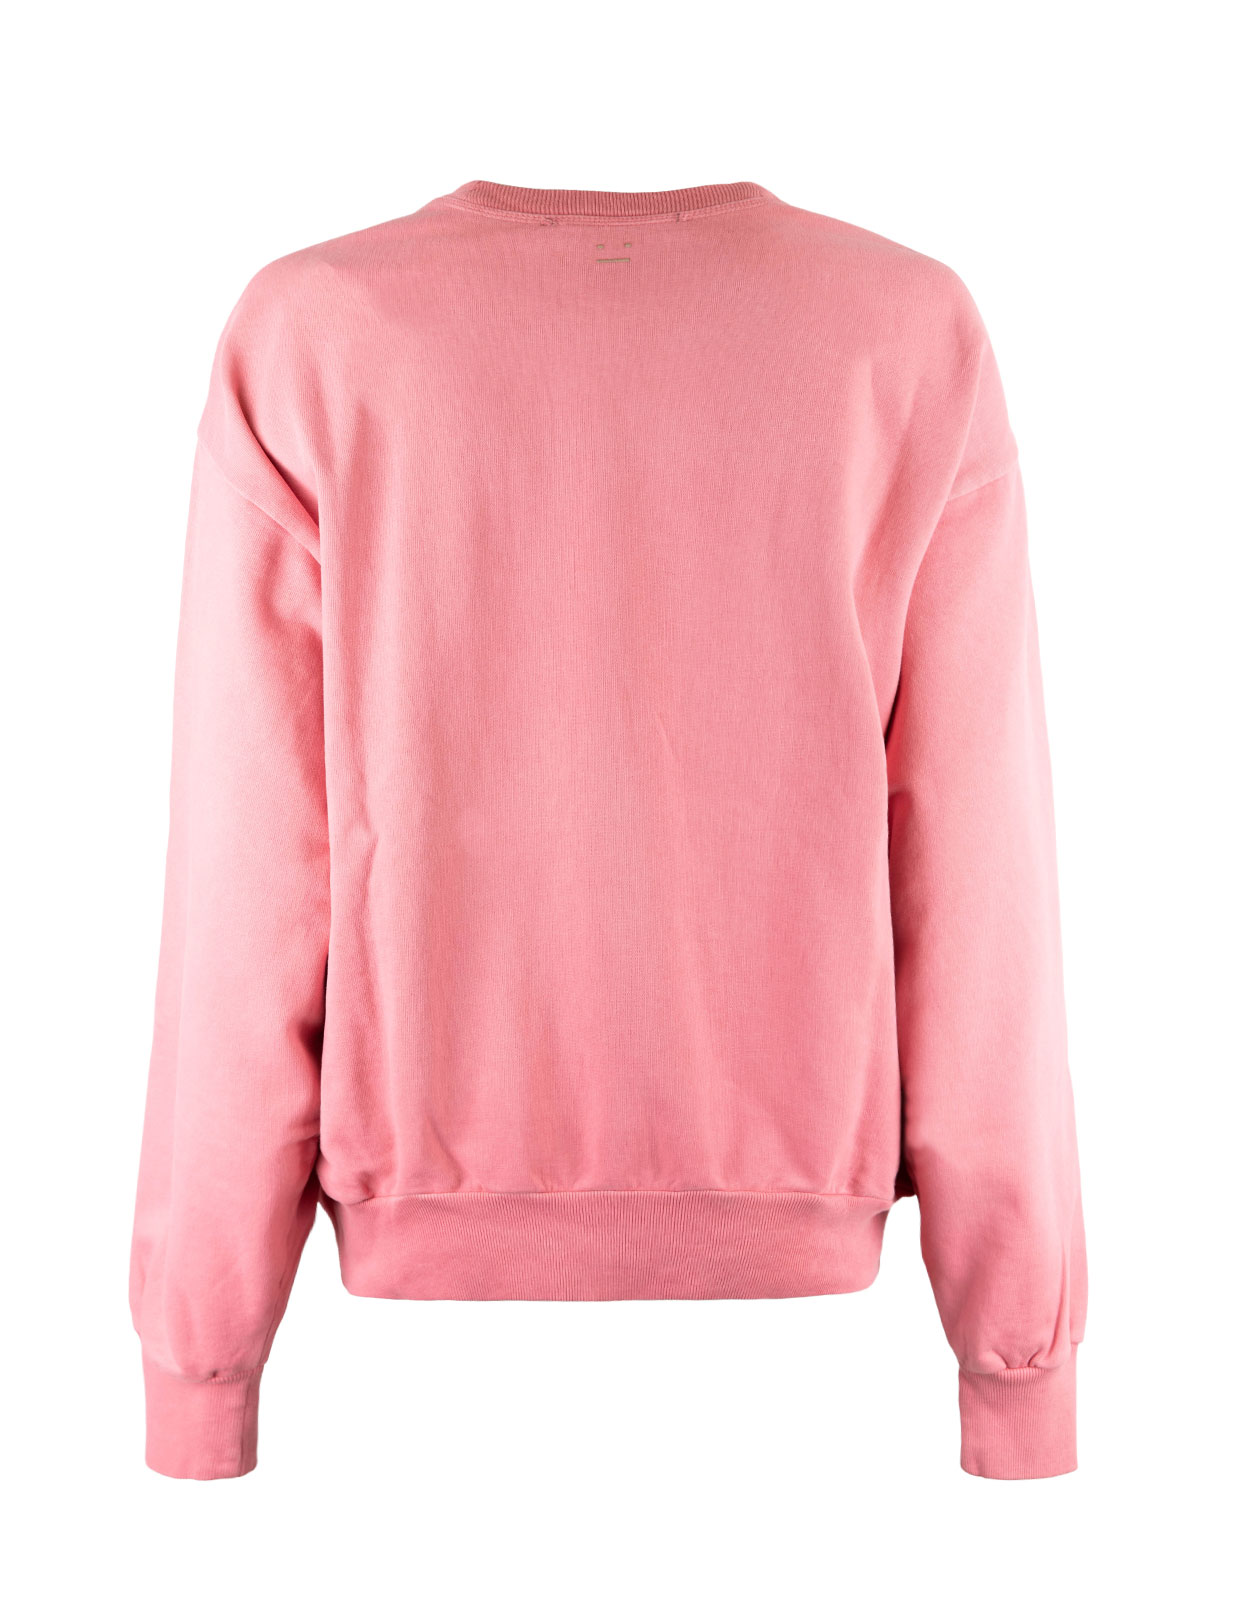 Crew Neck Sweater Bubblegum Pink